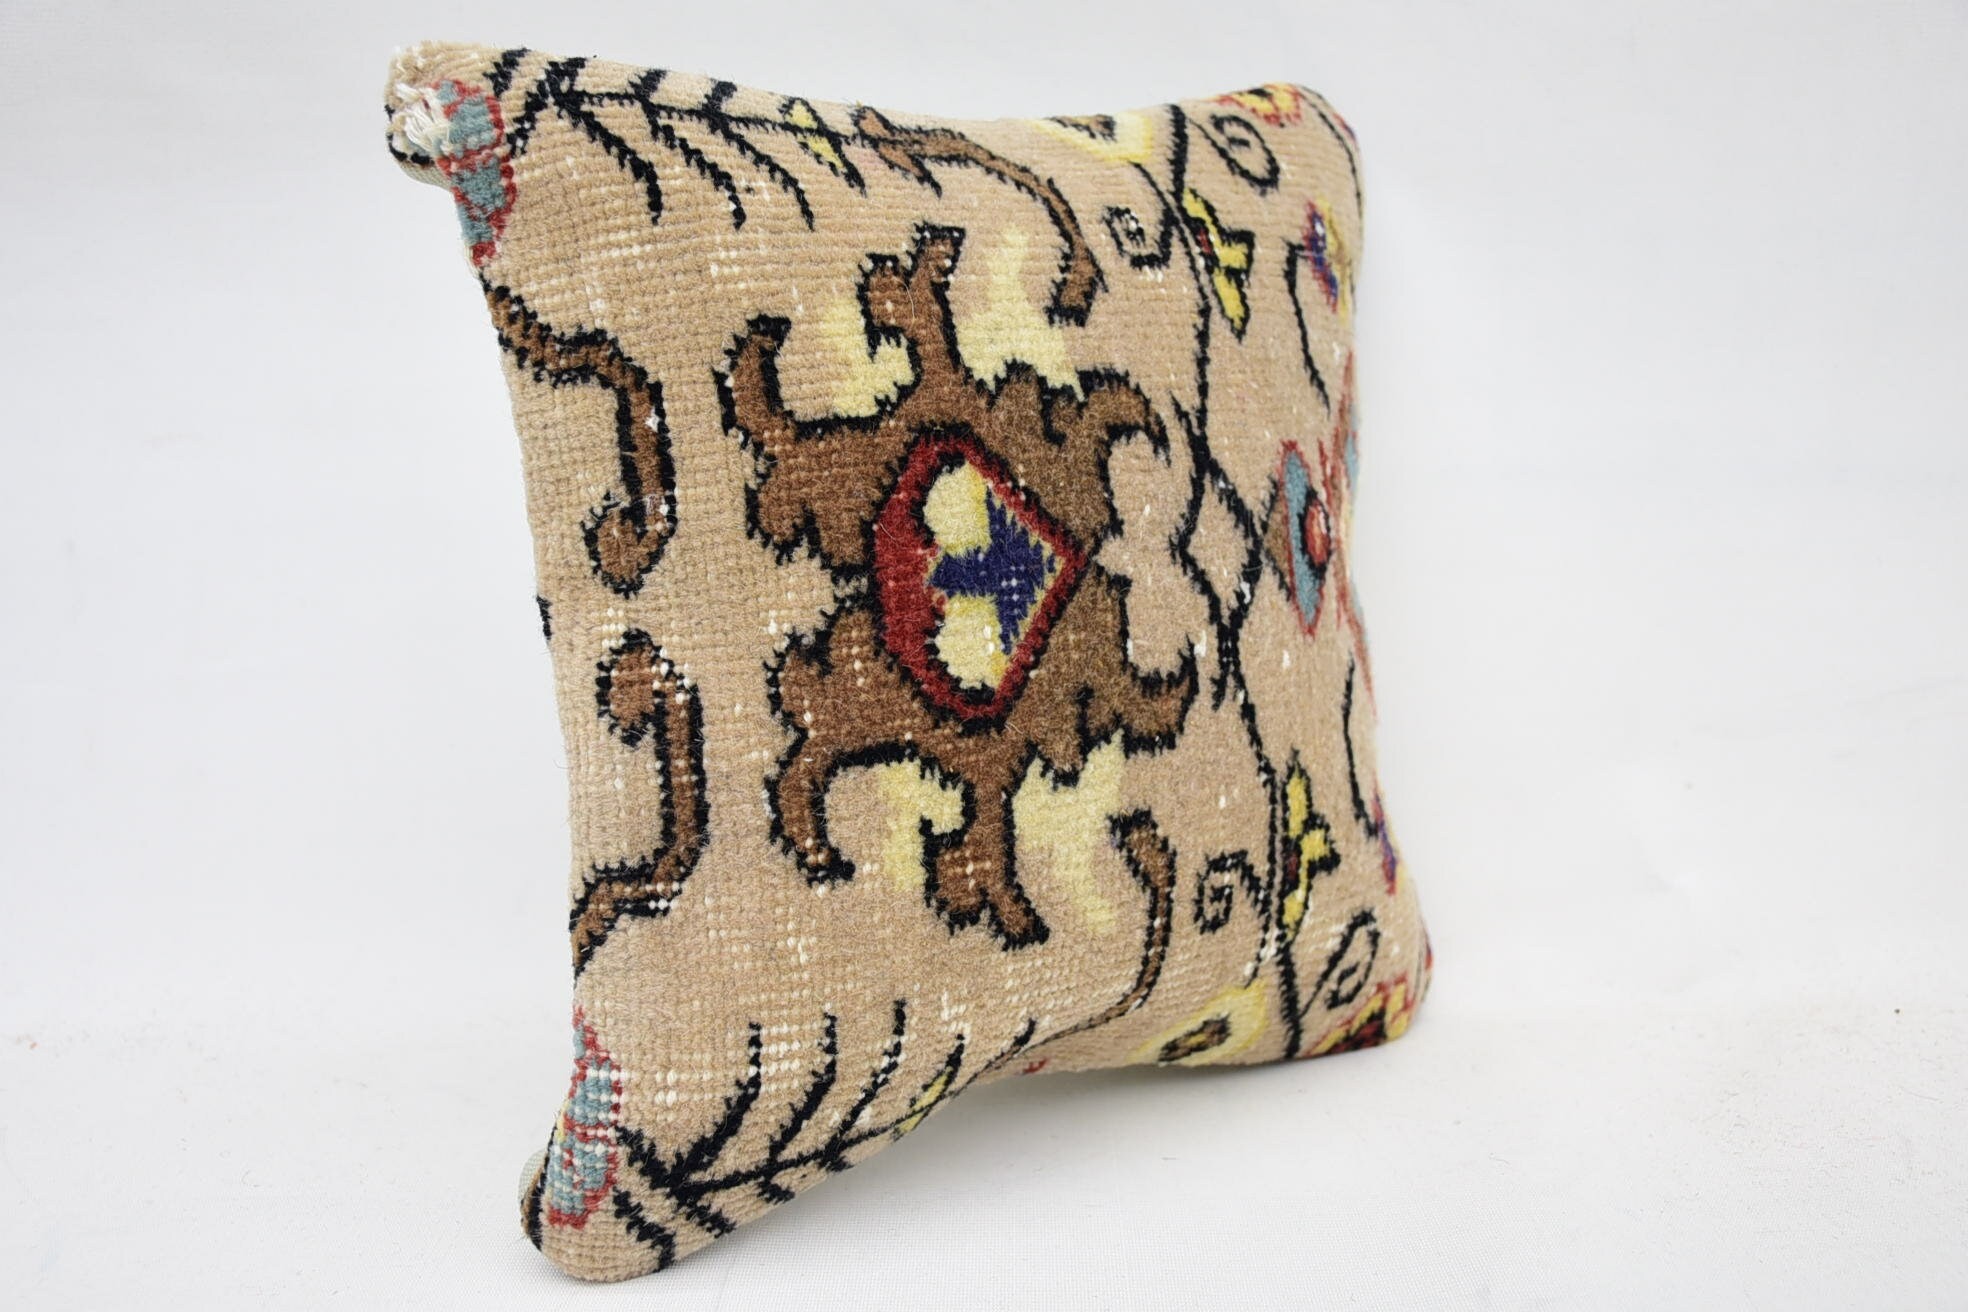 Throw Kilim Pillow, Knitted Cushion, Handmade Kilim Cushion, 12"x12" Beige Pillow Cover, Sofa Cushion Cover, Boho Pillow